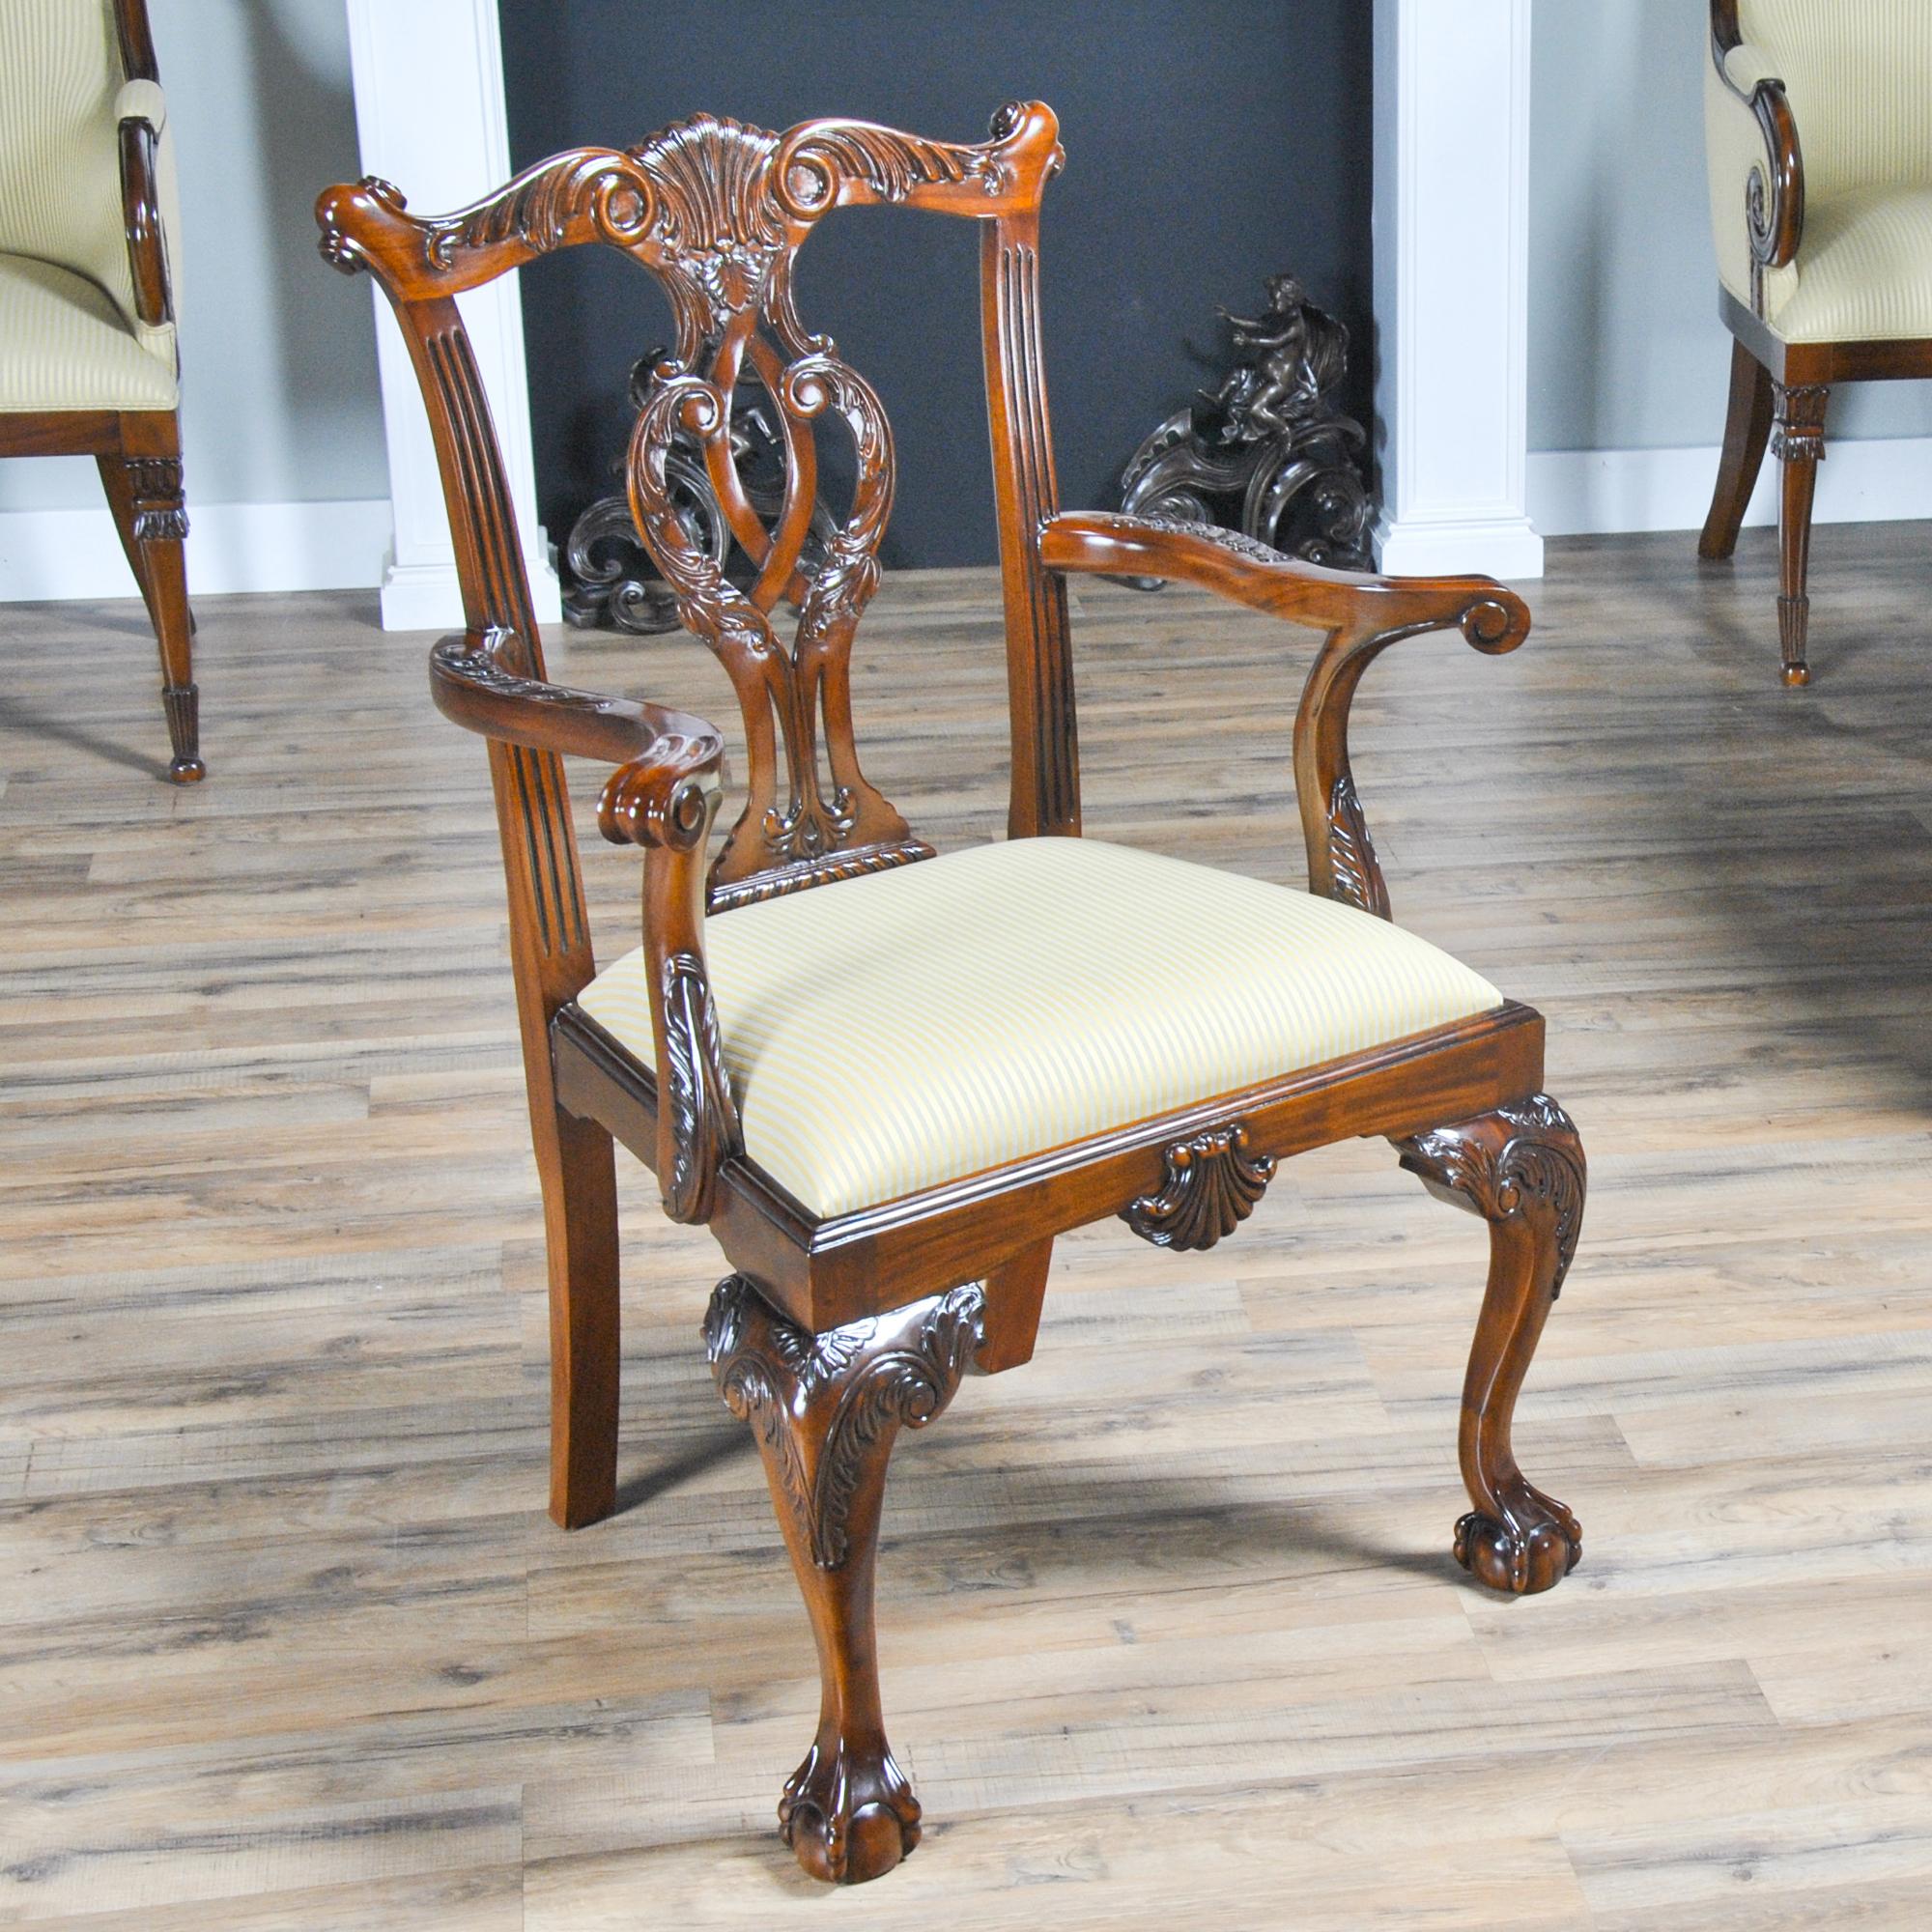 Cet ensemble de 10 chaises Philadelphia Chippendale se compose de 2 chaises à bras et de 8 chaises d'appoint. Les chaises ont été inspirées par certains des meilleurs sculpteurs et ébénistes des États-Unis. Semblables aux exemples trouvés au Musée